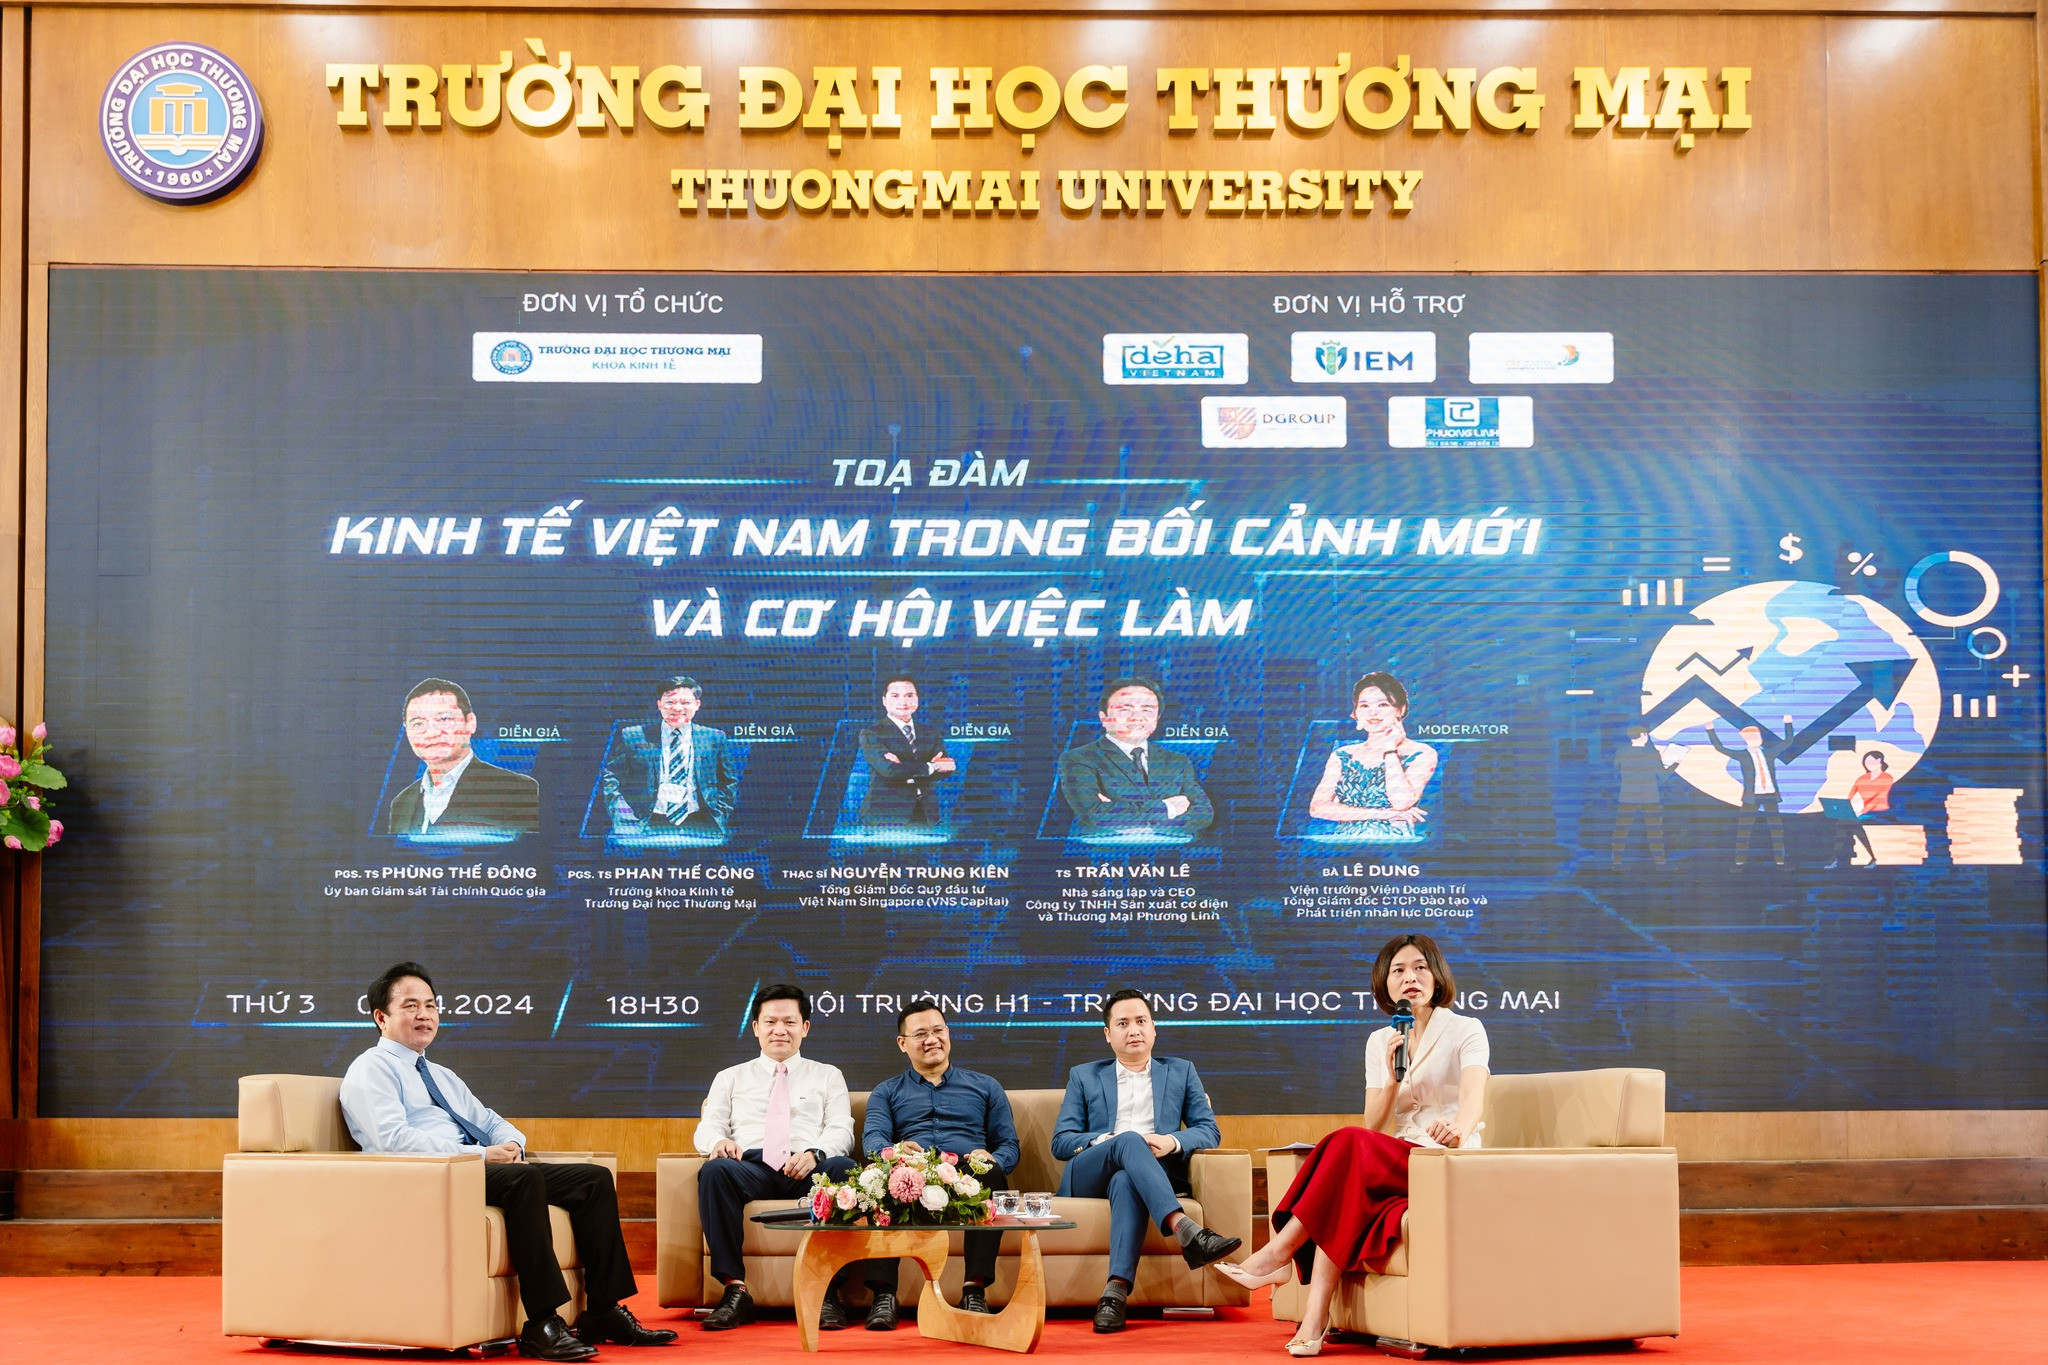 Talkshows Kinh tế Việt Nam trong bối cảnh mới và cơ hội việc làm